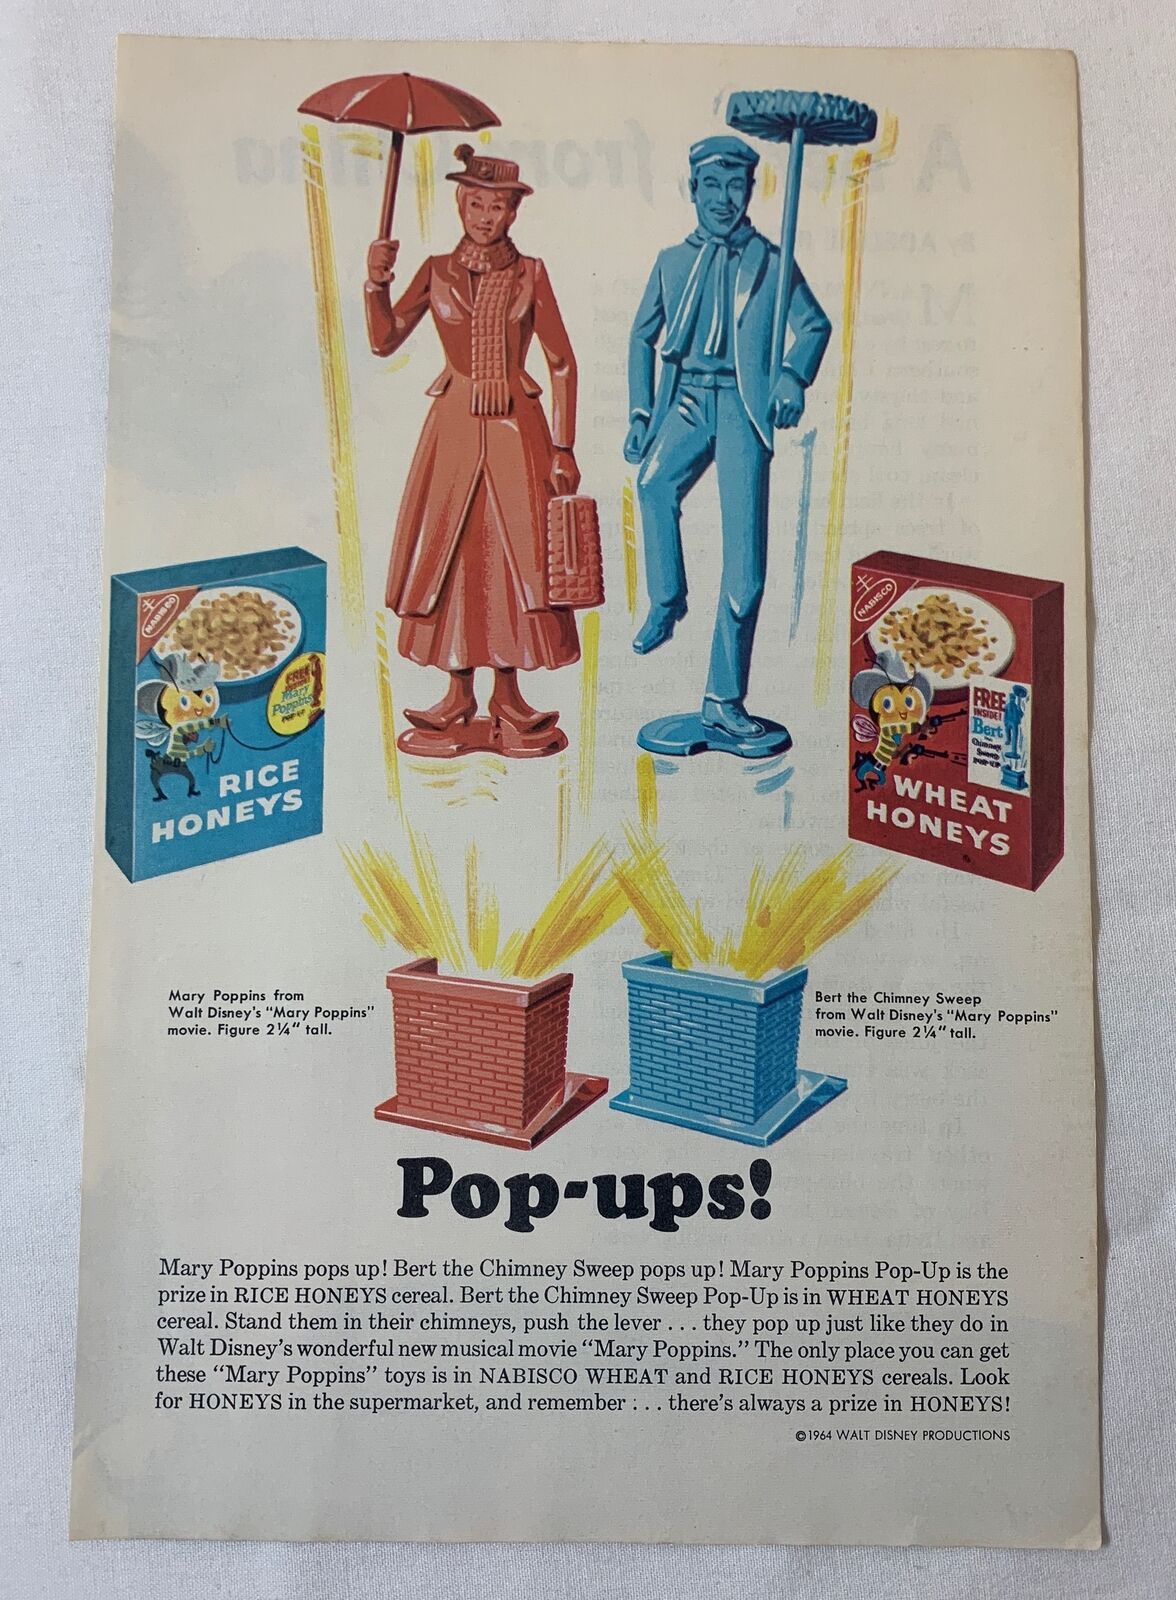 1965 Nabisco Rice Honeys/Wheat Honeys ad page ~ Walt Disney MARY POPPINS POP-UPS